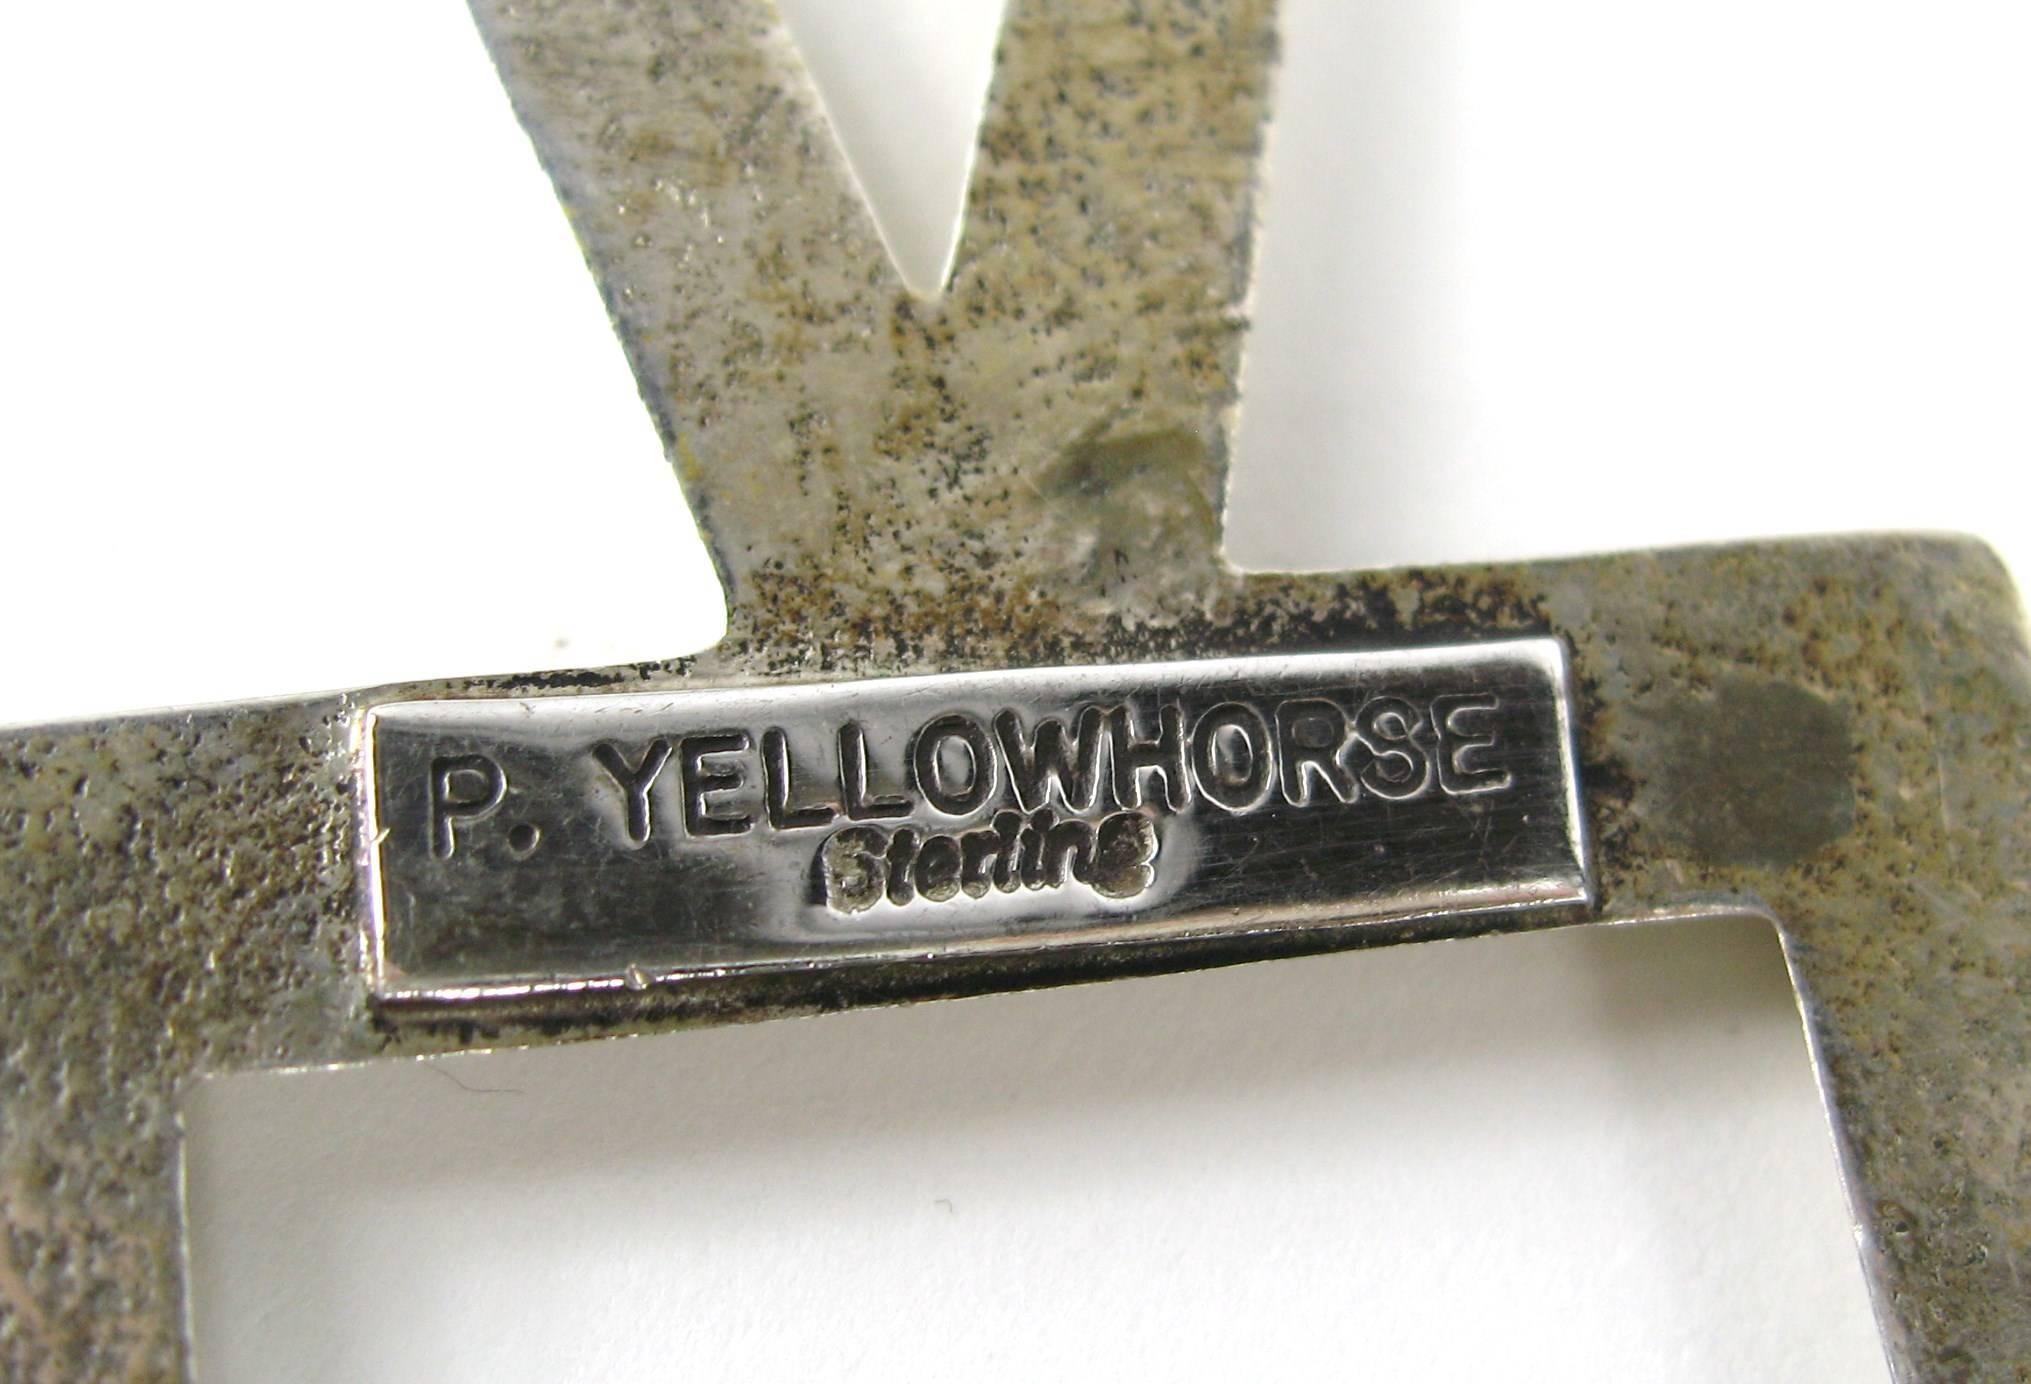 jay yellowhorse